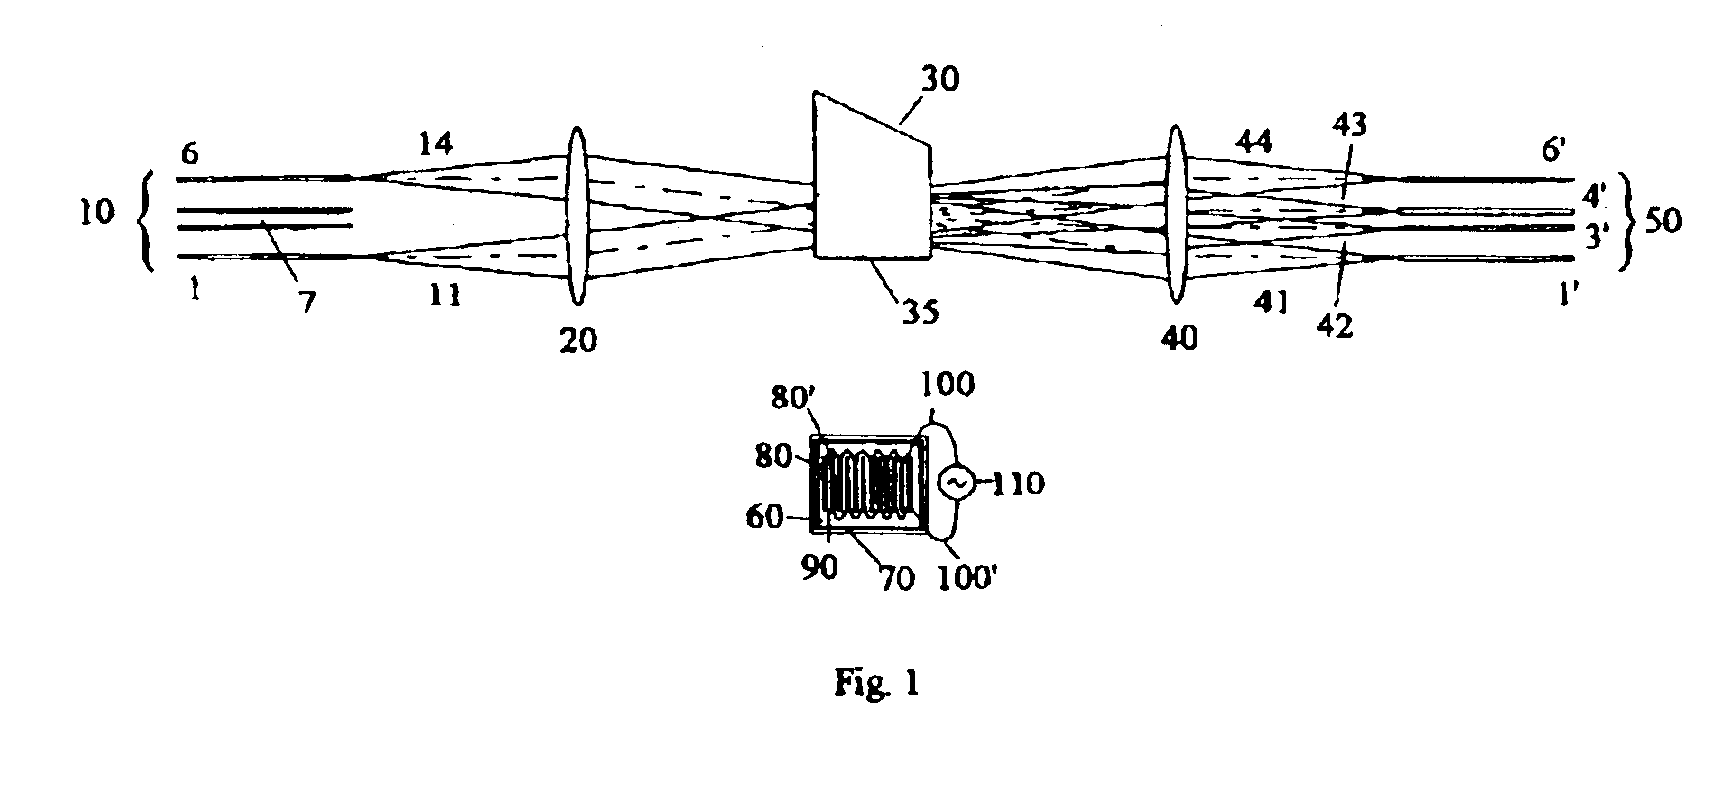 Fiber-optic matrix switch using phased array acousto-optic device